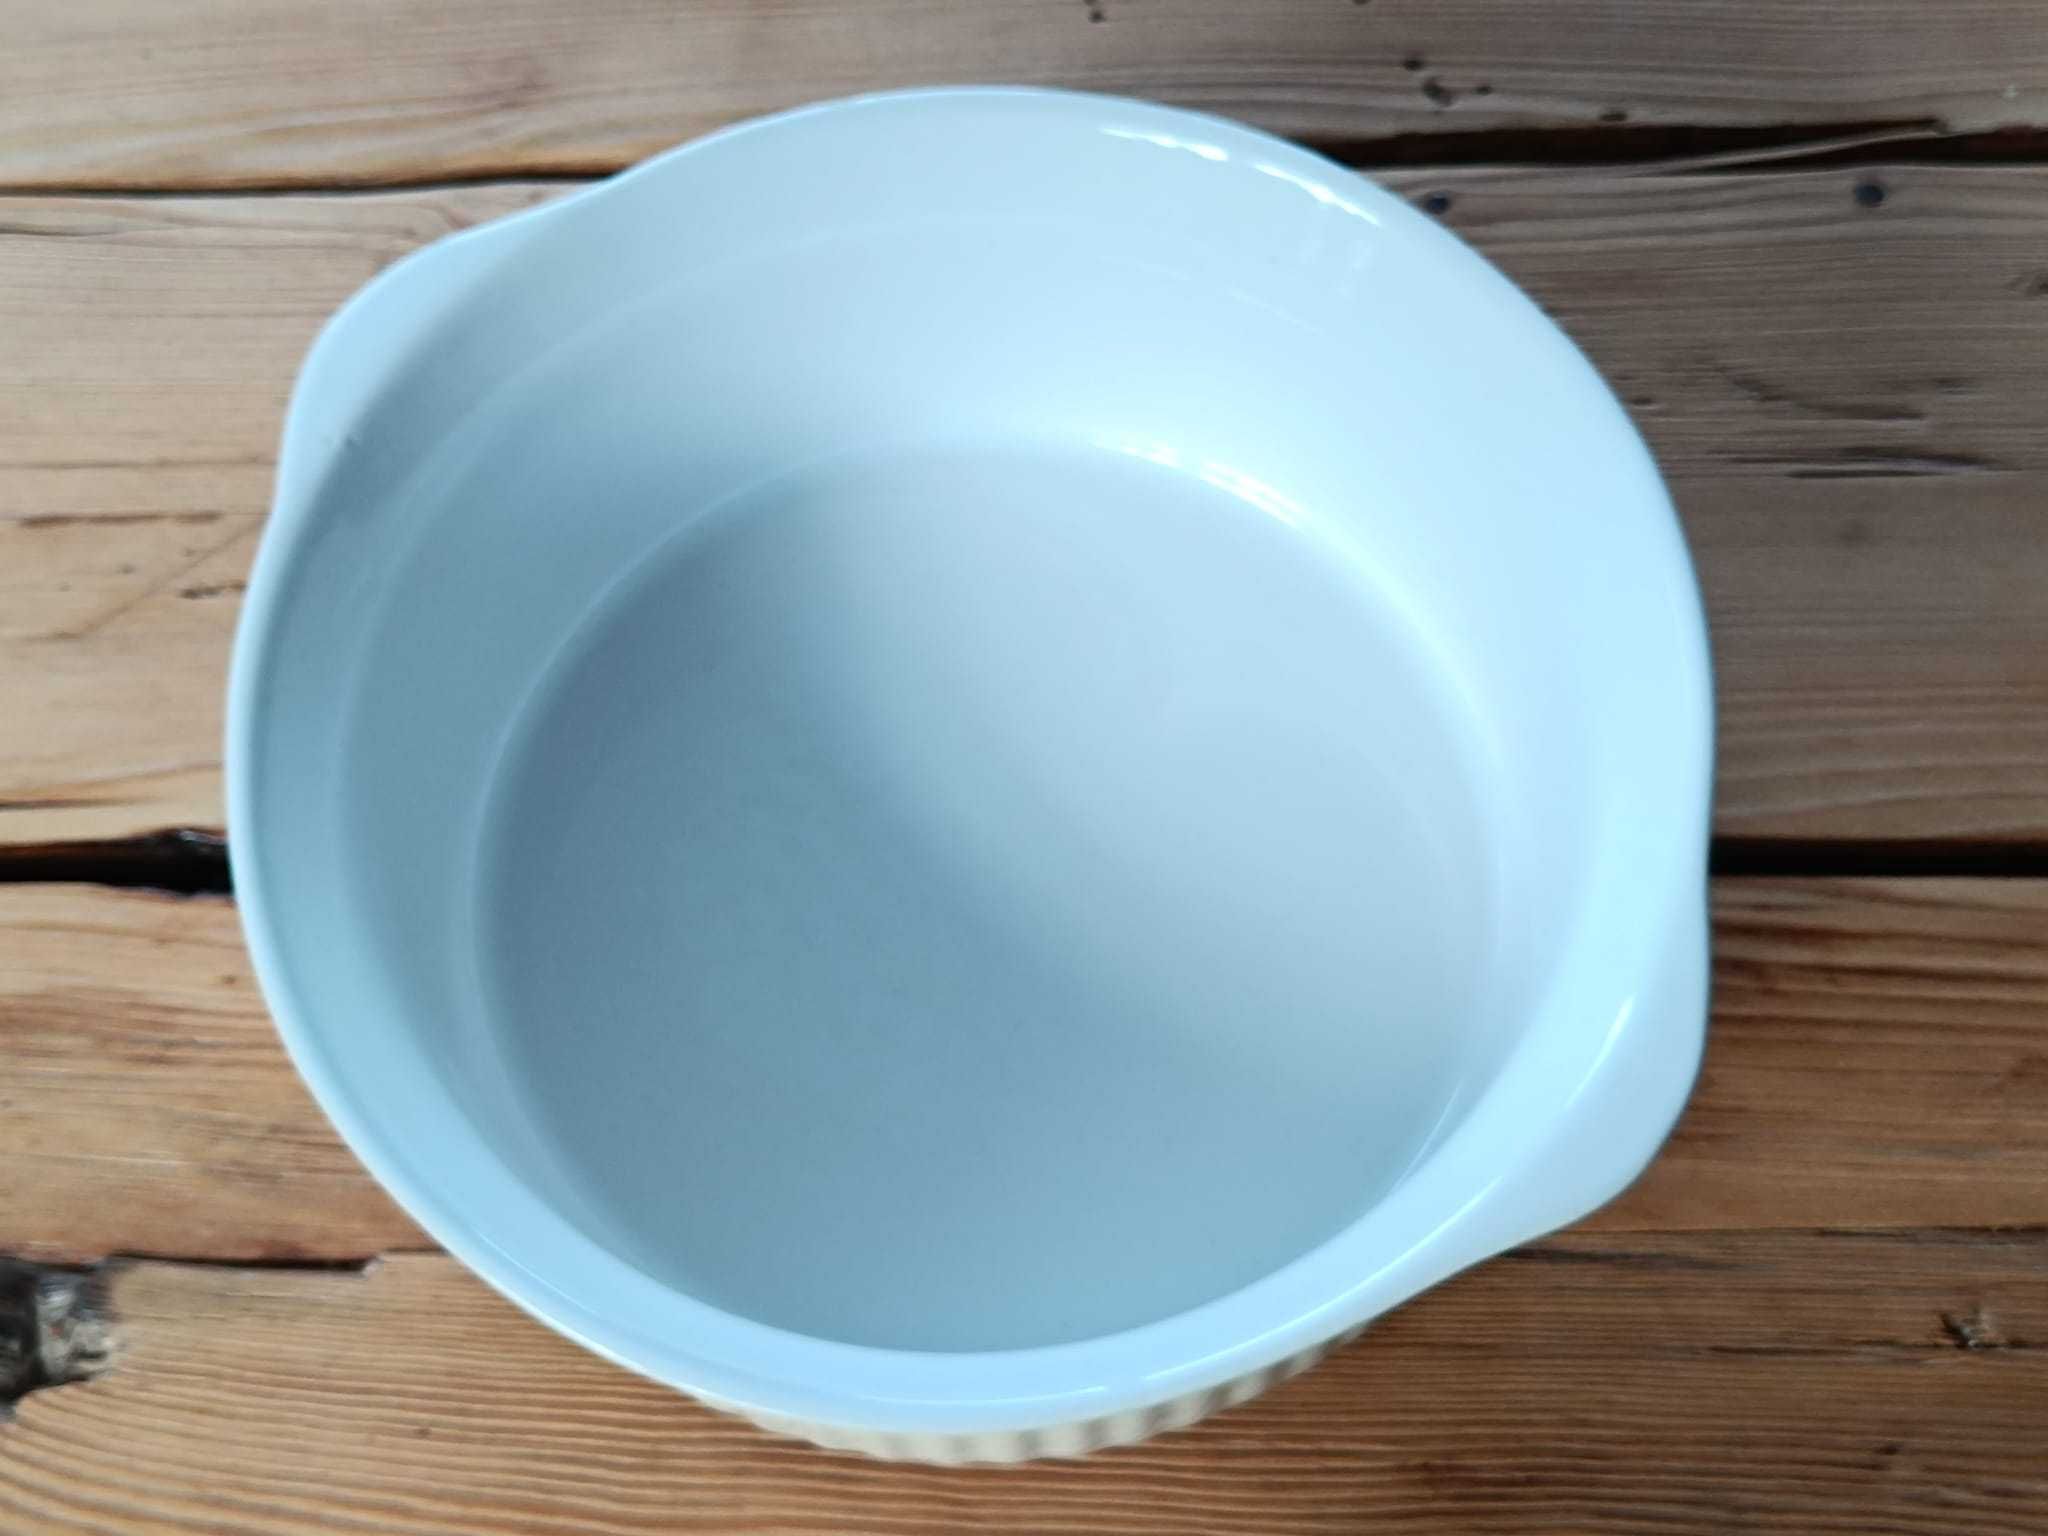 duża okrągła forma ceramiczna do pieczenia ciasta tarty zapiekanek